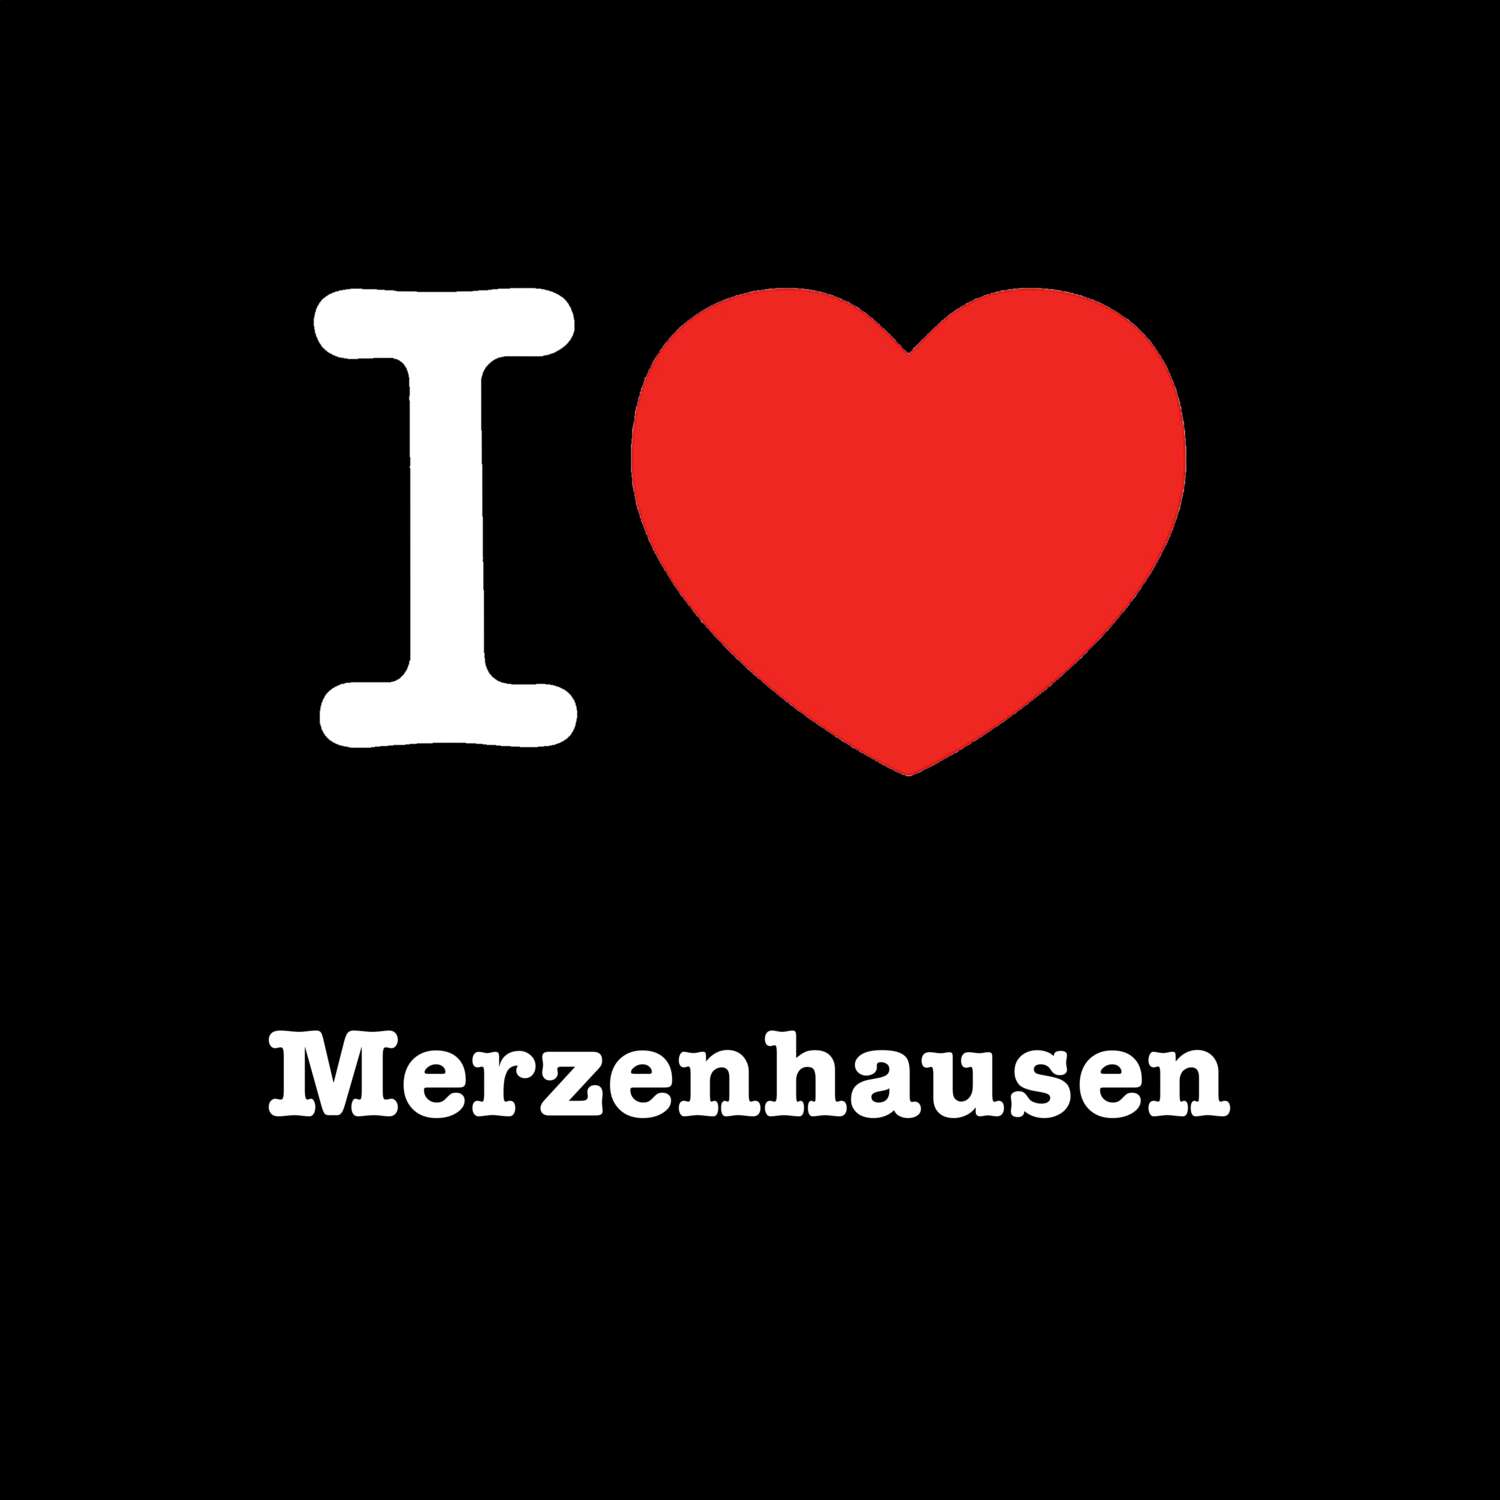 Merzenhausen T-Shirt »I love«